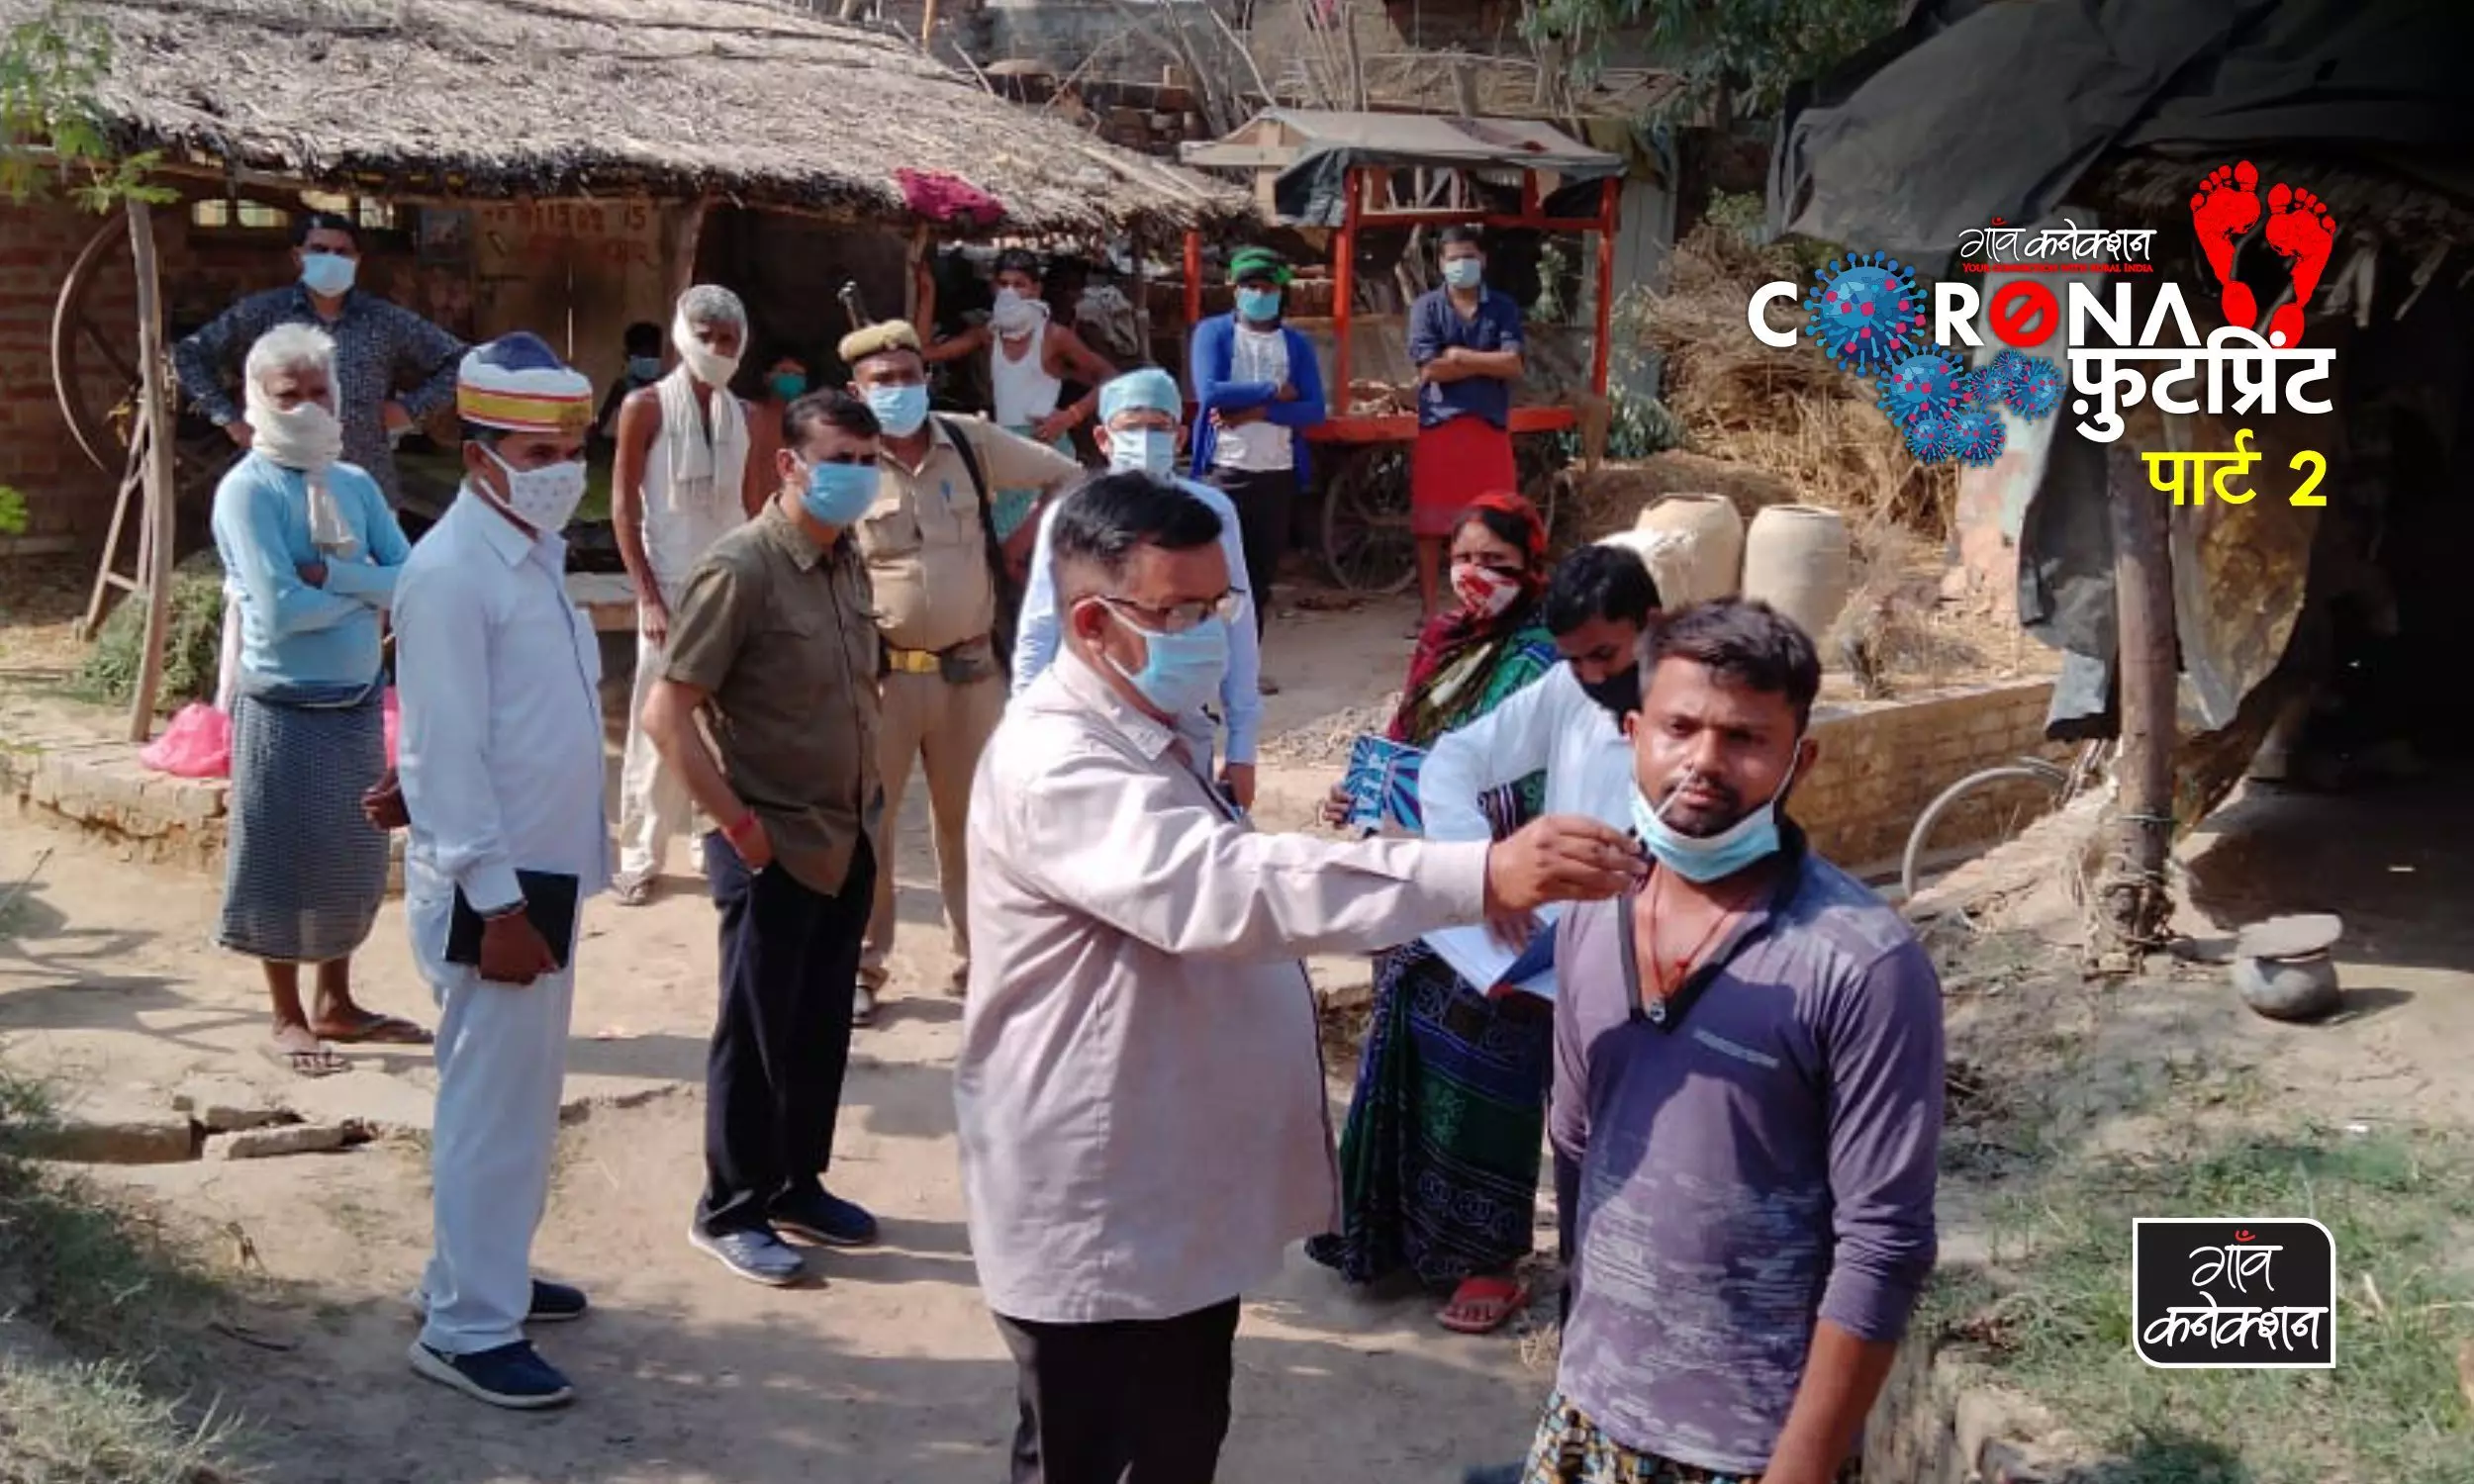 मध्य प्रदेश के ग्रामीणों को कोविड रिपोर्ट पॉजिटिव आने का डर, लोग नहीं करवा रहे टेस्ट